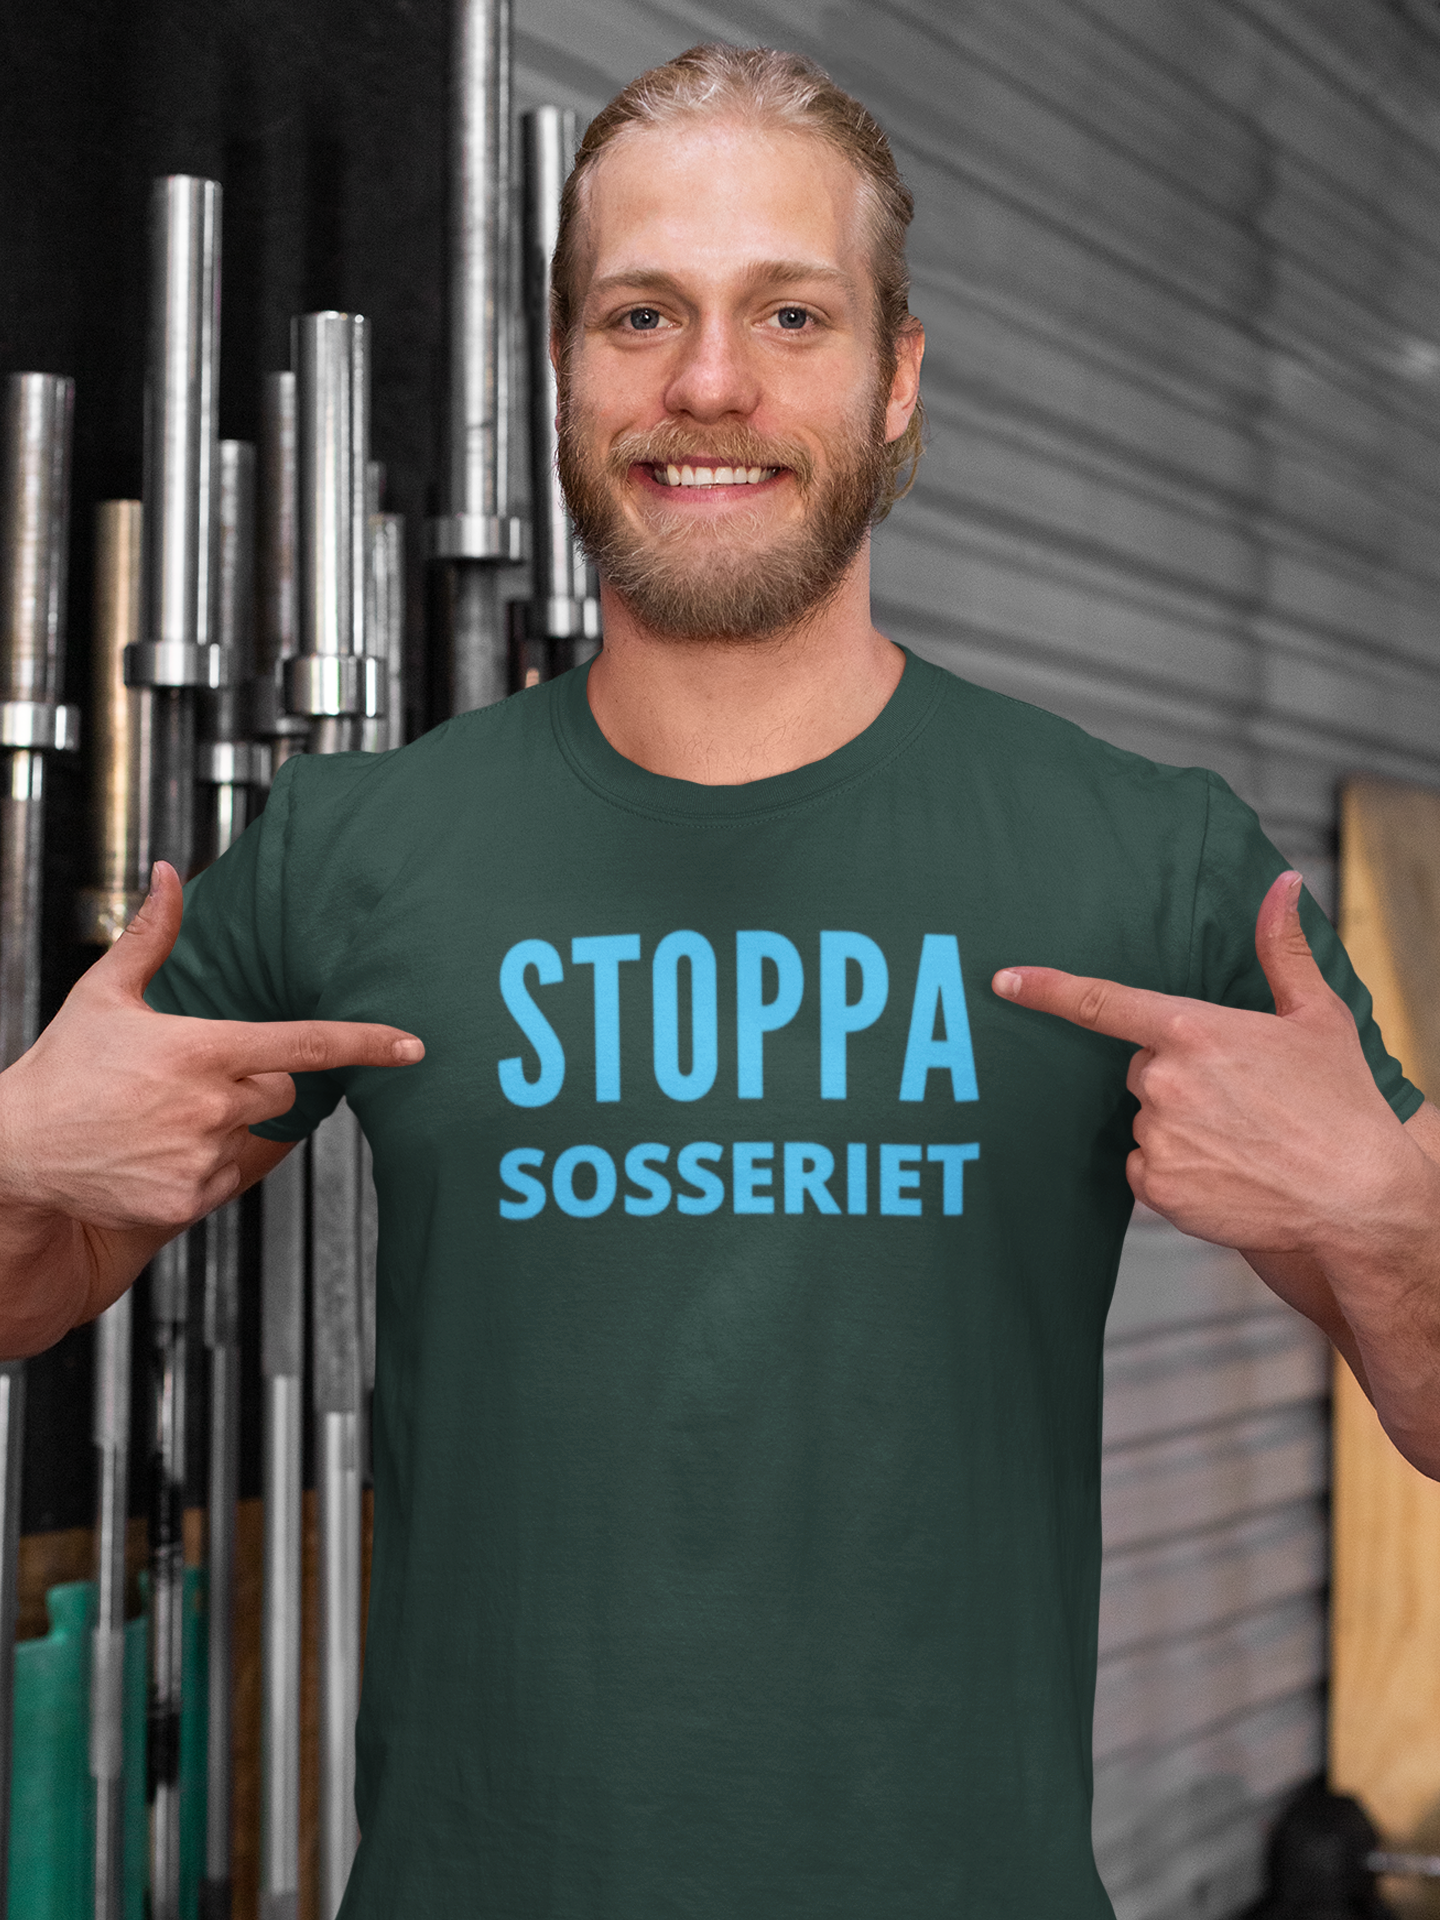 Köpa Tshirt med text Stoppa Sosseriet gör du hos Statements Clothing, Sveriges största utbud med olika färger på Tshirts med tryck på